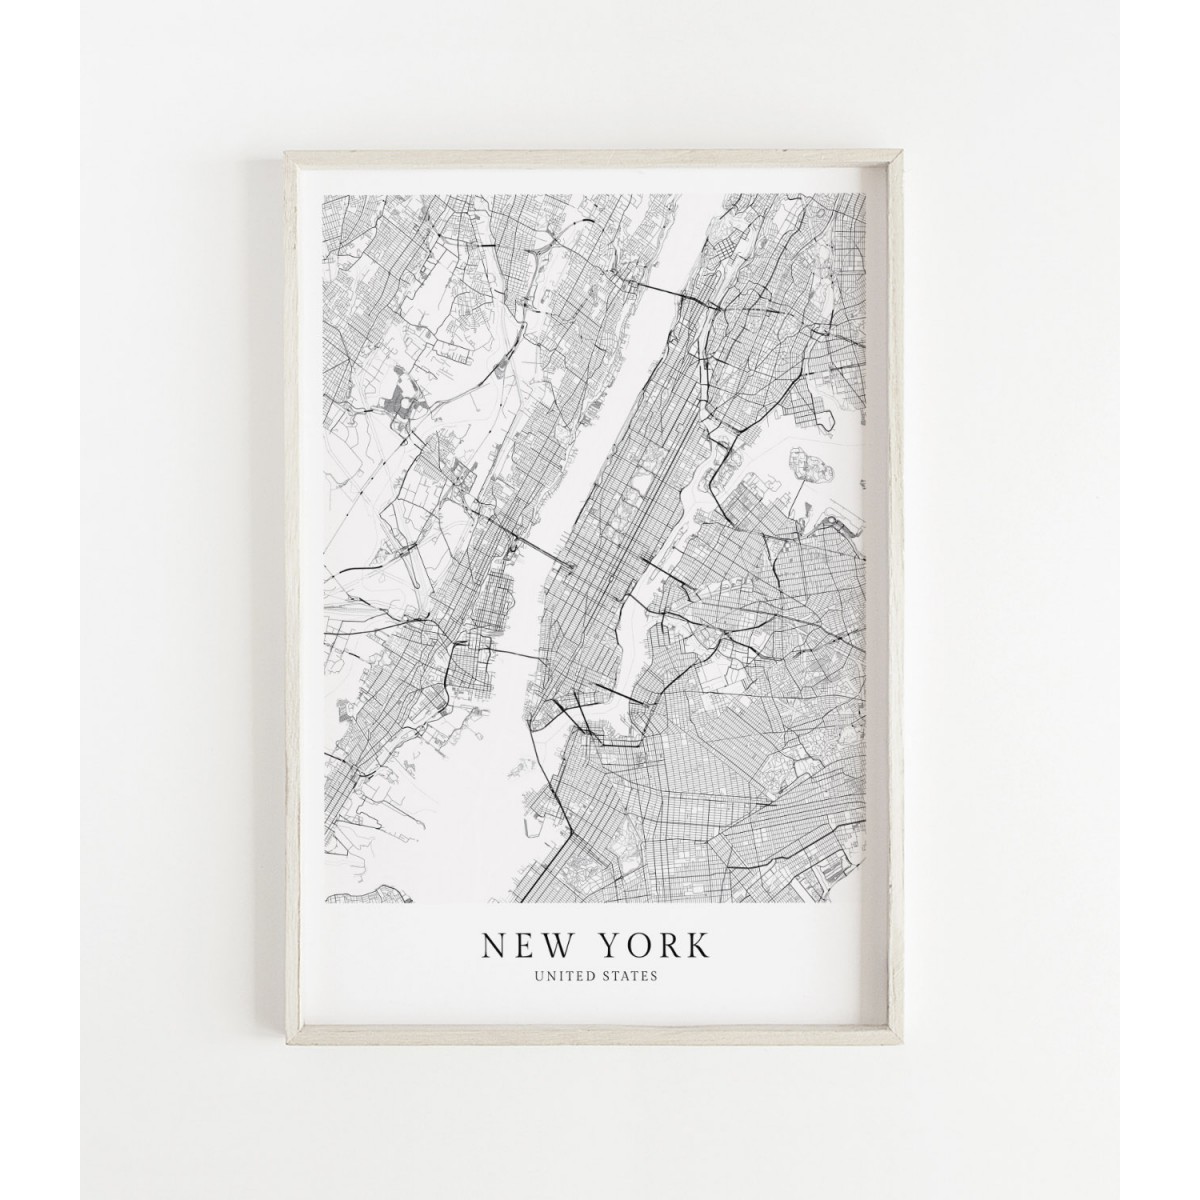 NEW YORK als hochwertiges Poster im skandinavischen Stil von Skanemarie